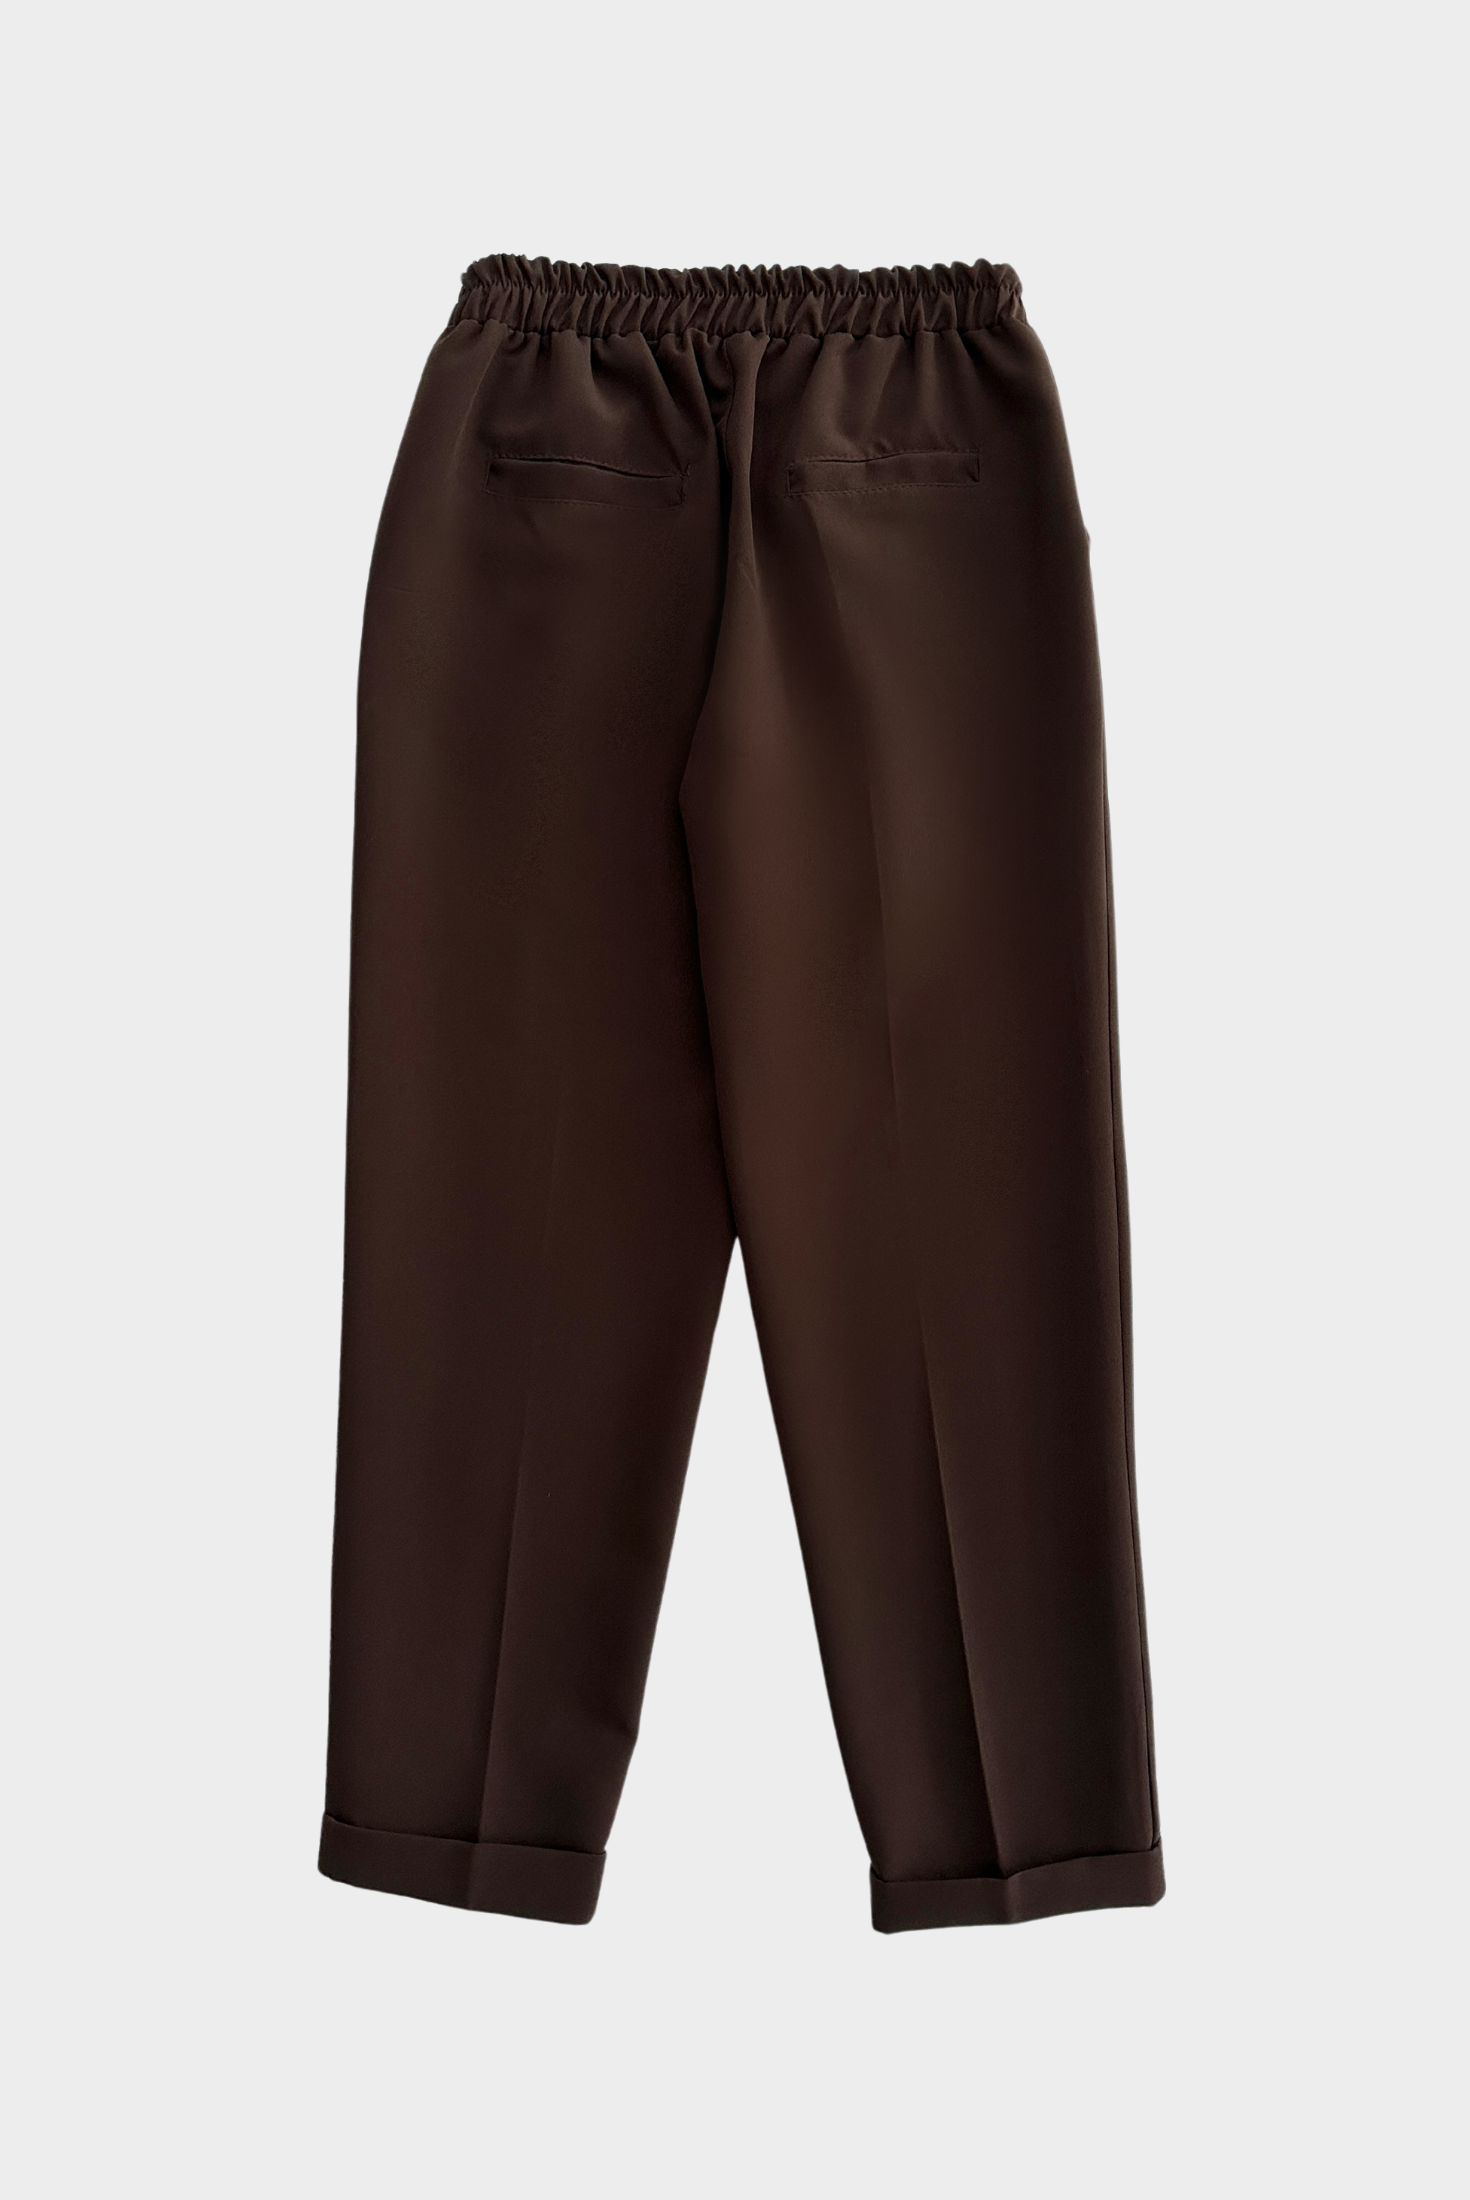 מכנס מחויט עם גומי במותן בצבע חום כהה